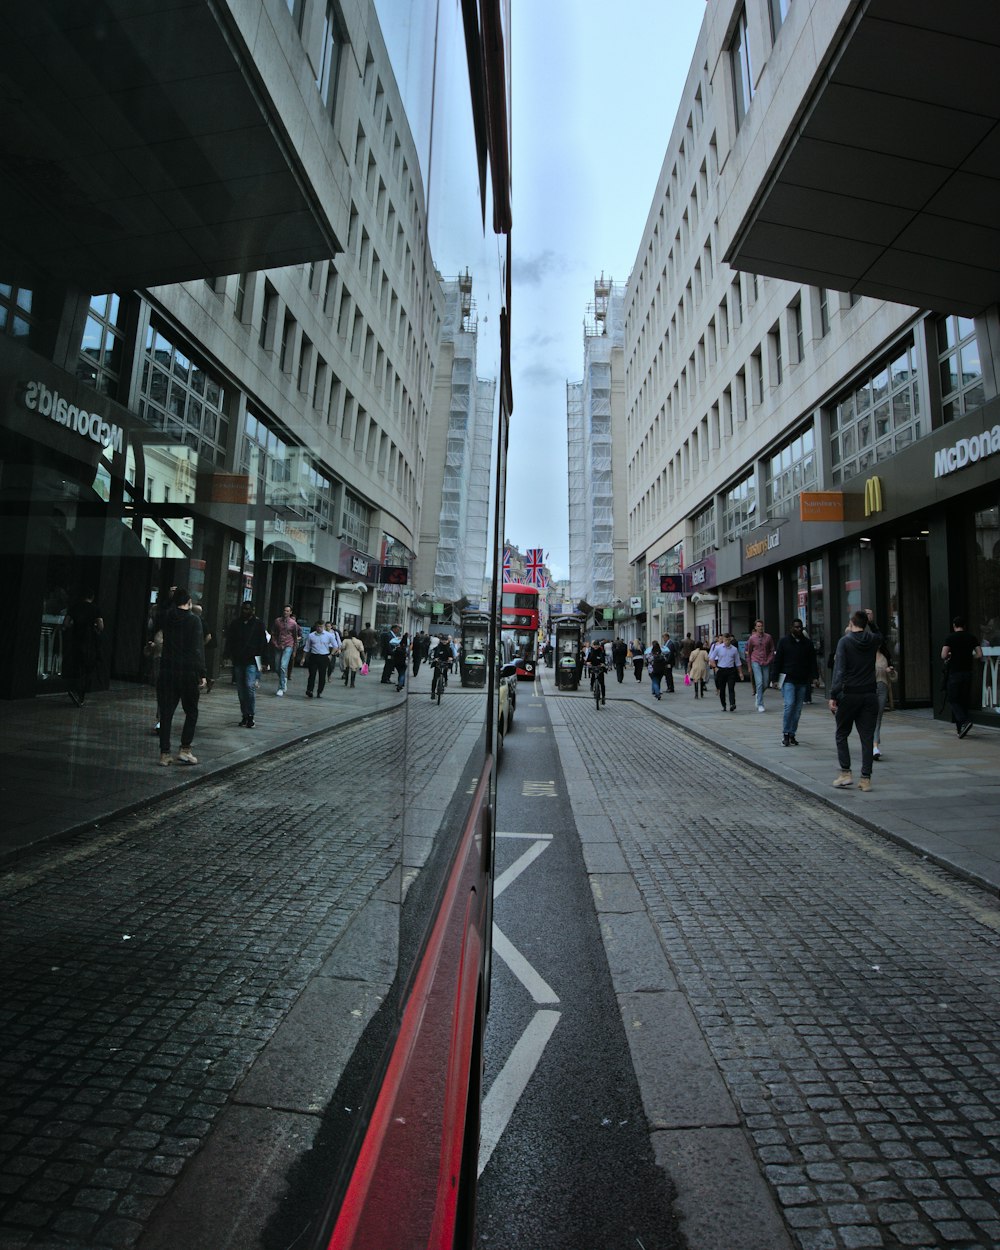 Una calle concurrida con gente caminando